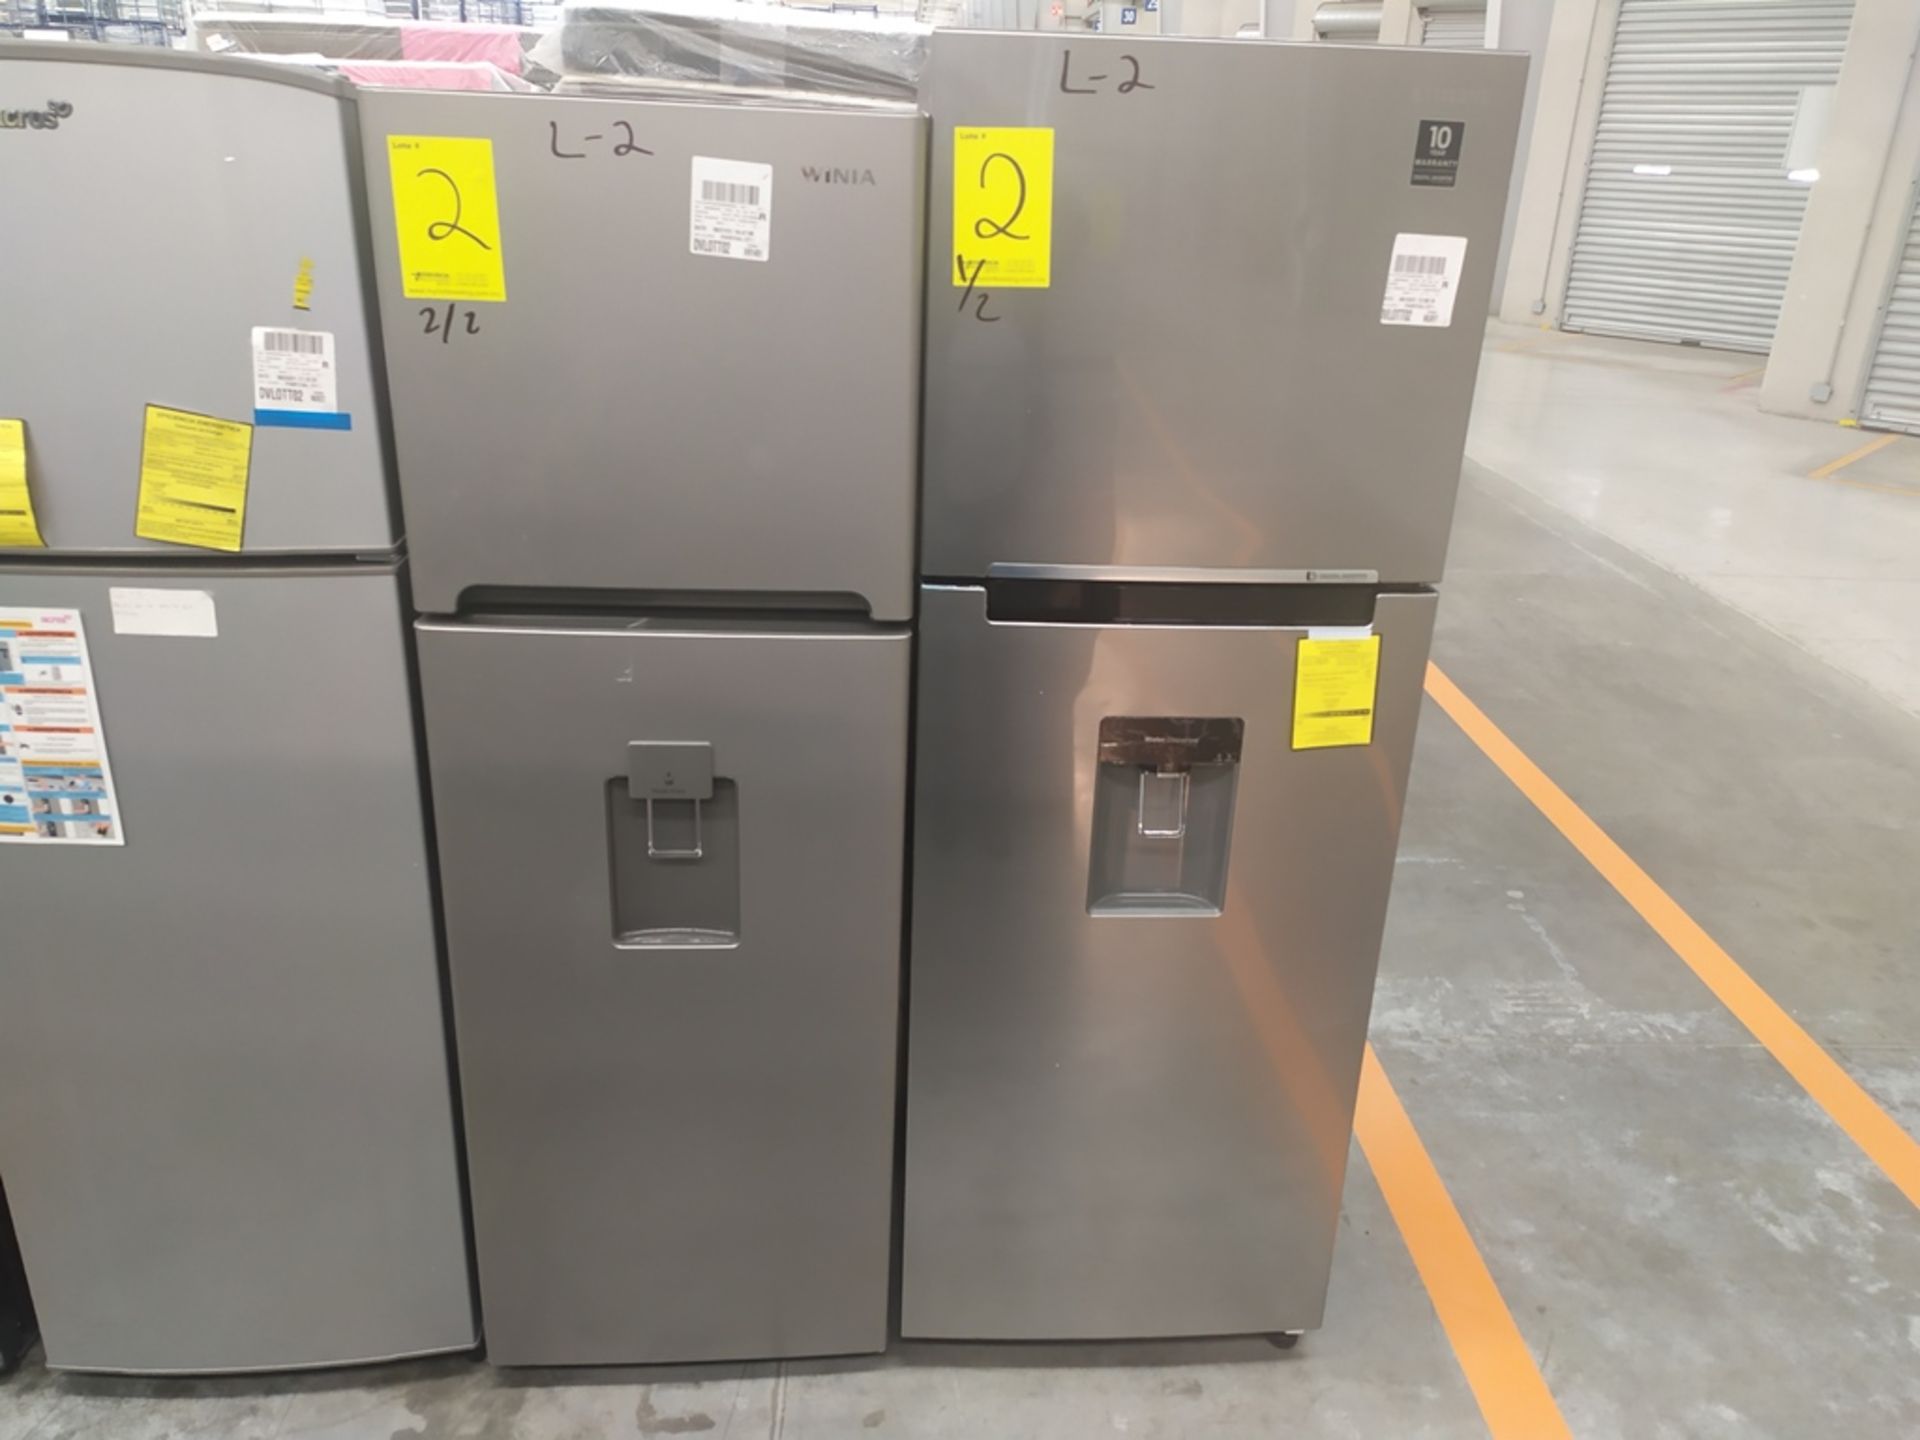 2 Refrigeradores, uno Marca Samsung, Modelo RT32K5710S8, Serie 0ARB4BAR600275H, Color Gris con disp - Image 2 of 9